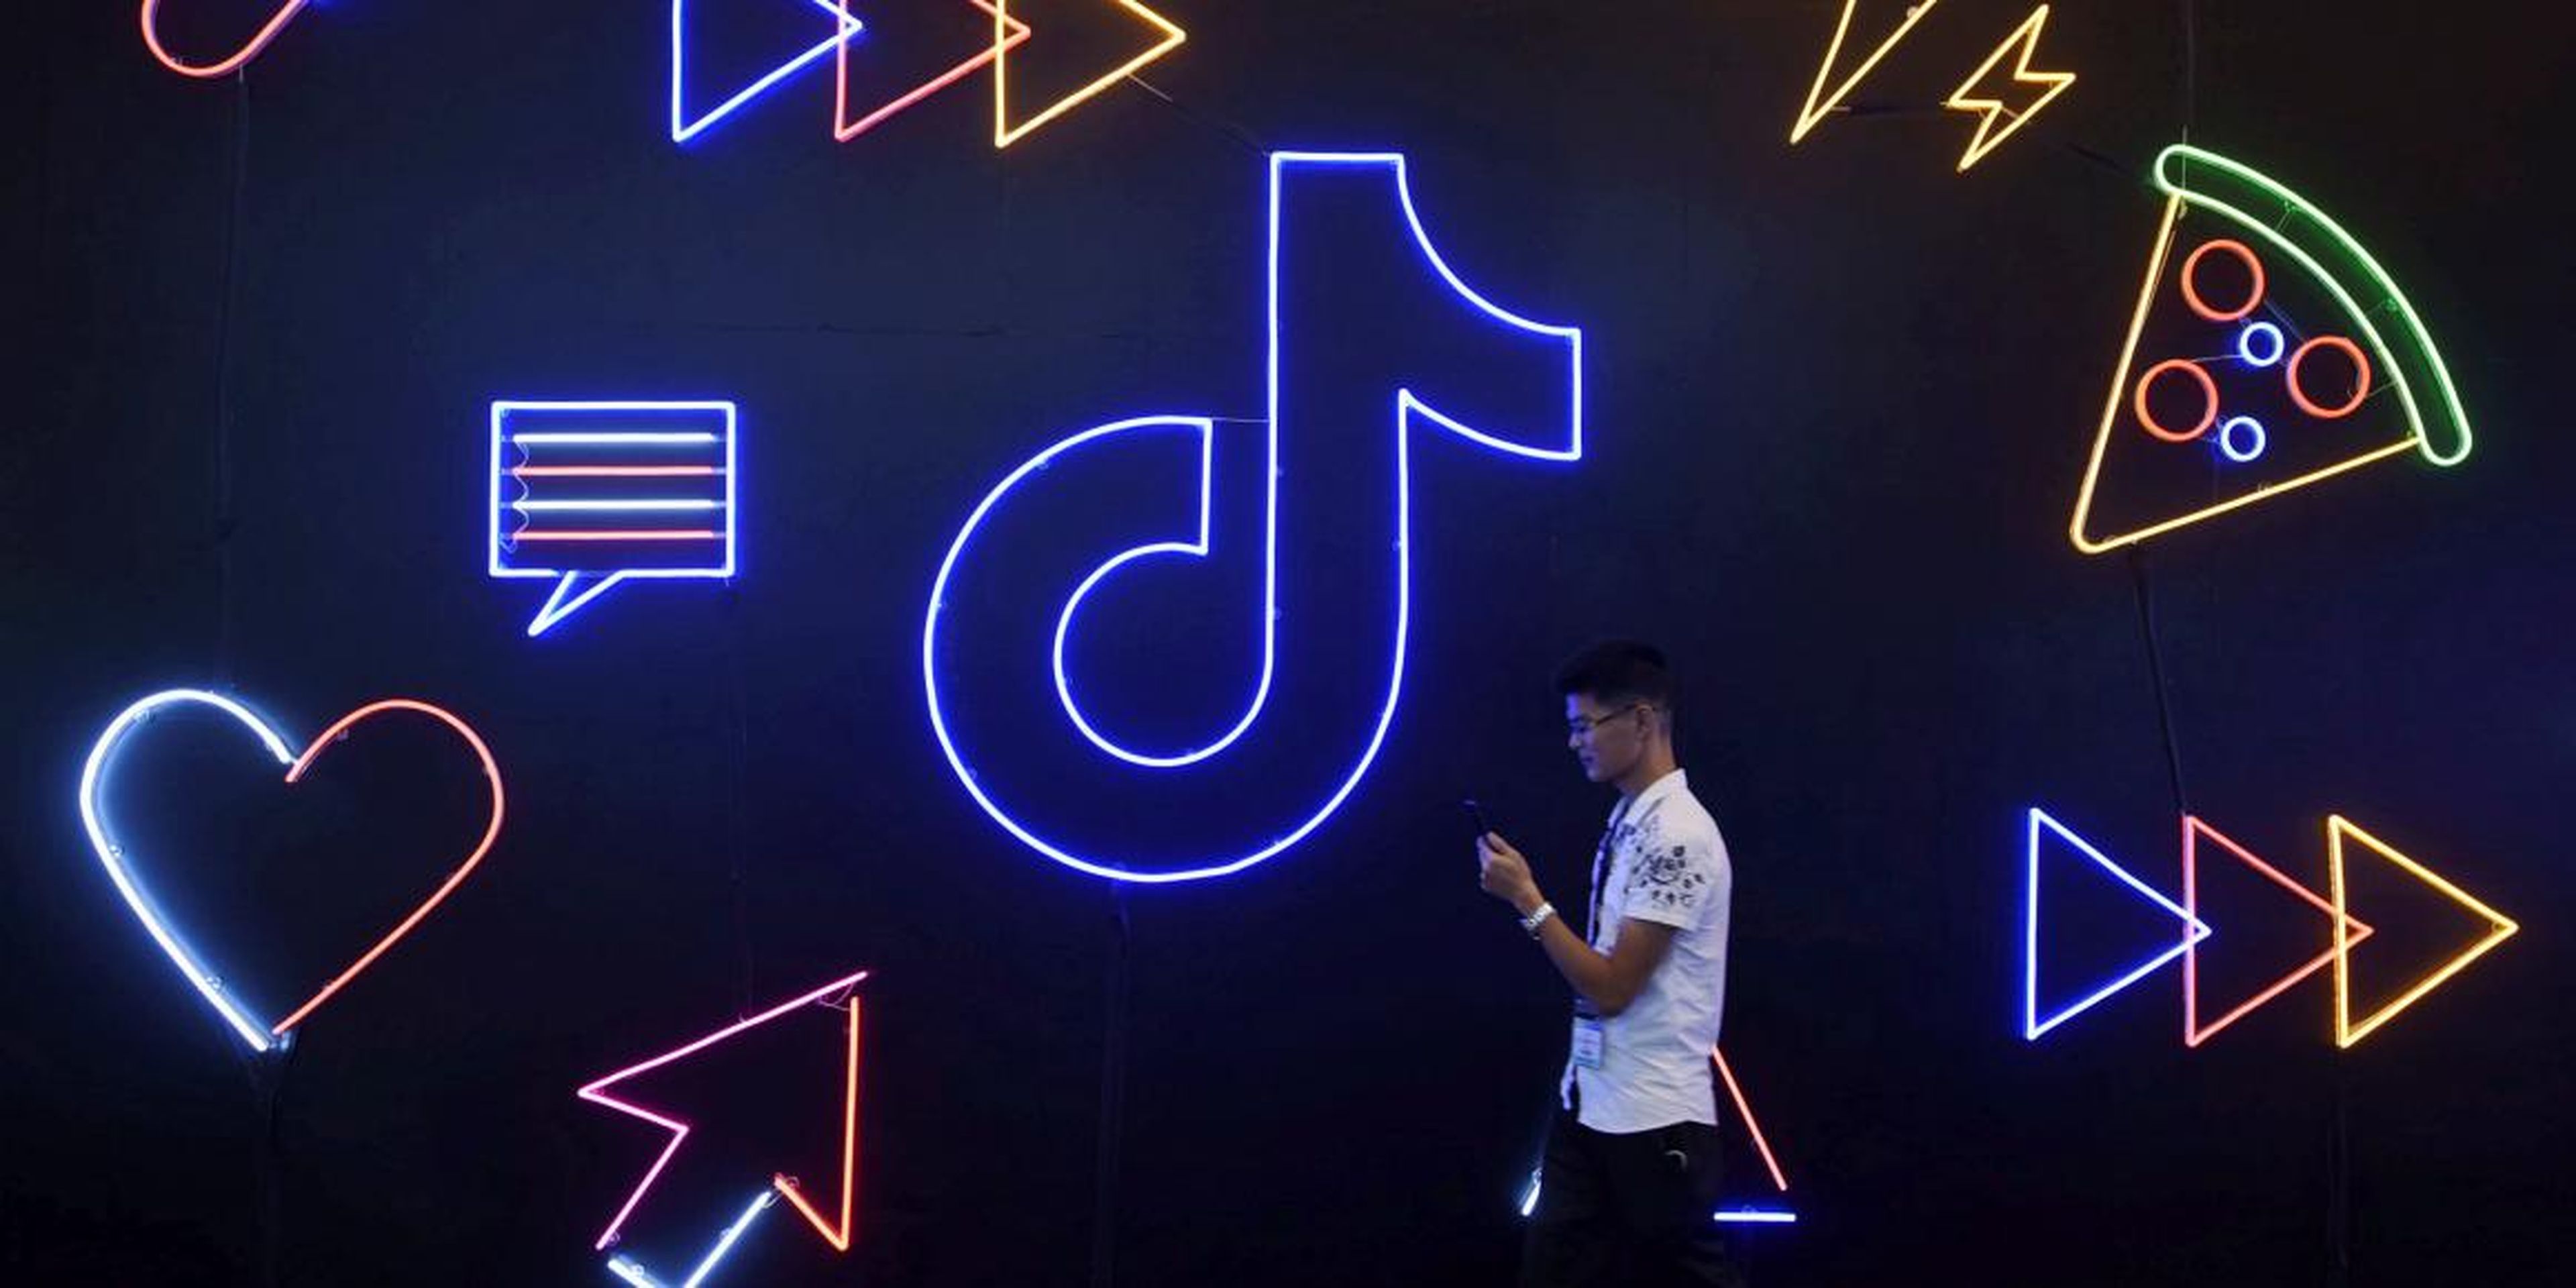 Un hombre pasa junto a un letrero de TikTok en la Exposición Internacional de Productos Artificiales en Hangzhou, China, en octubre de 2019.